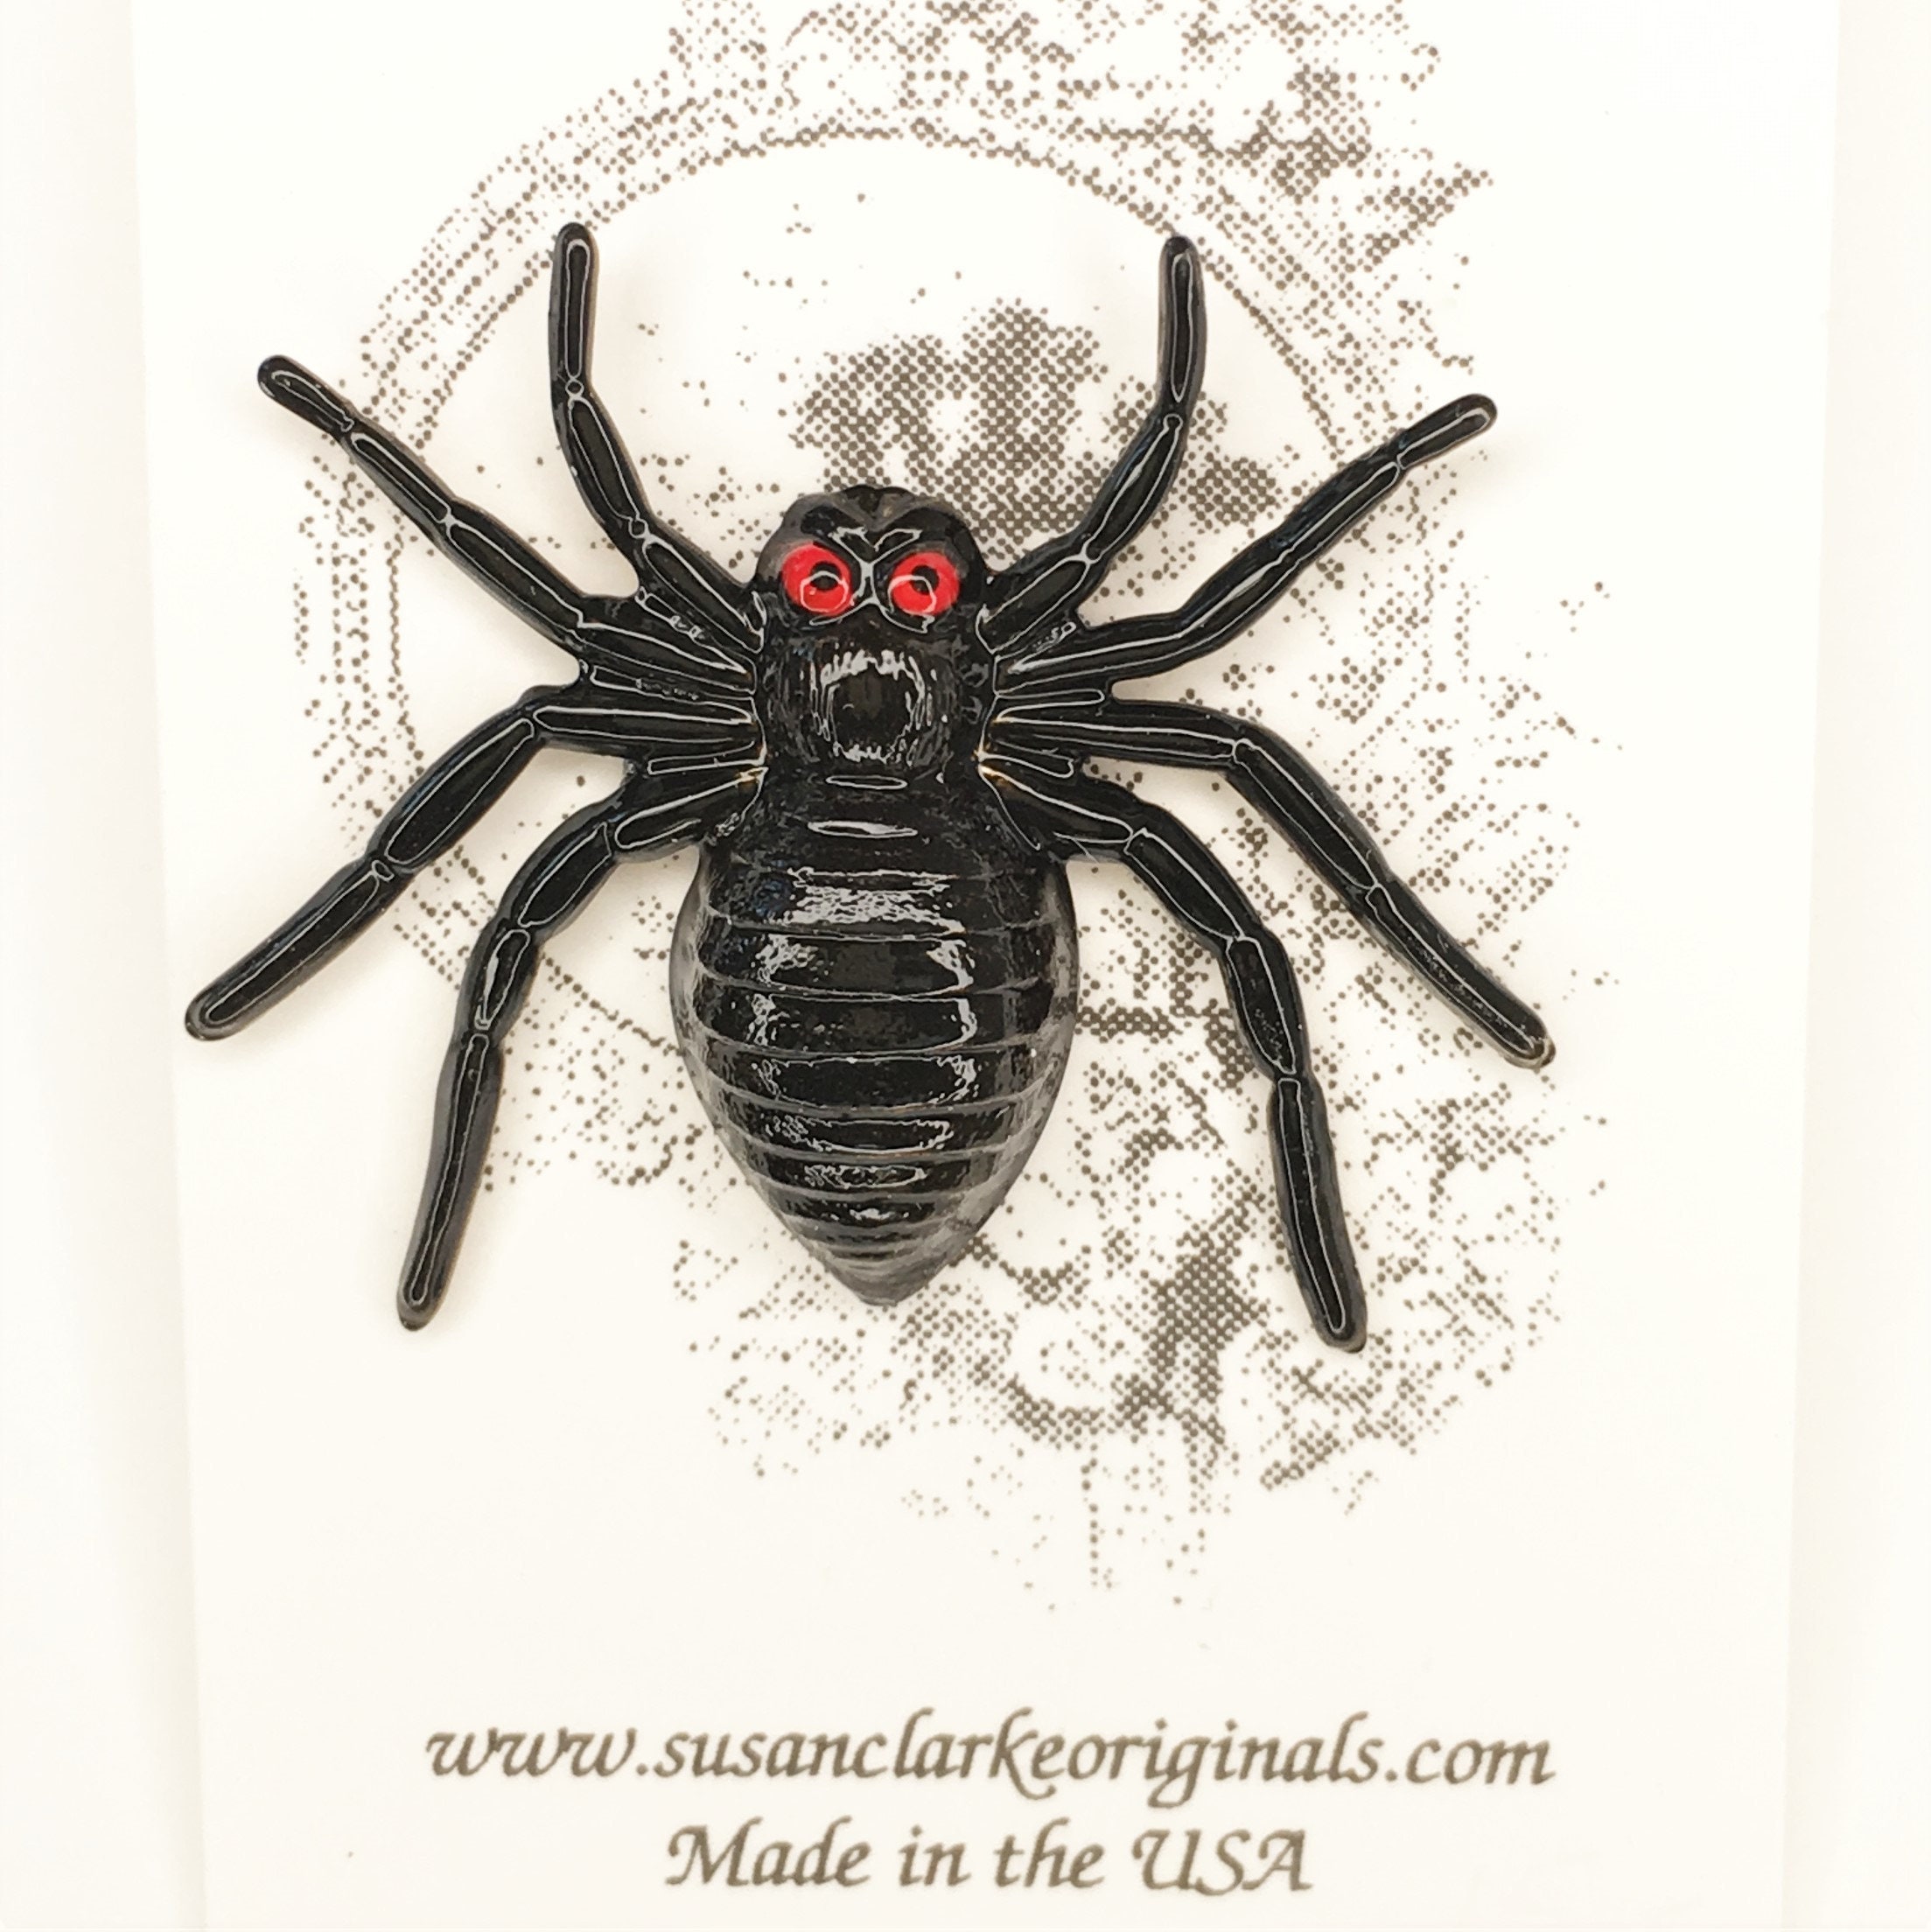 Photo de stock Une araignée fouettée avec deux pinces 1852346662